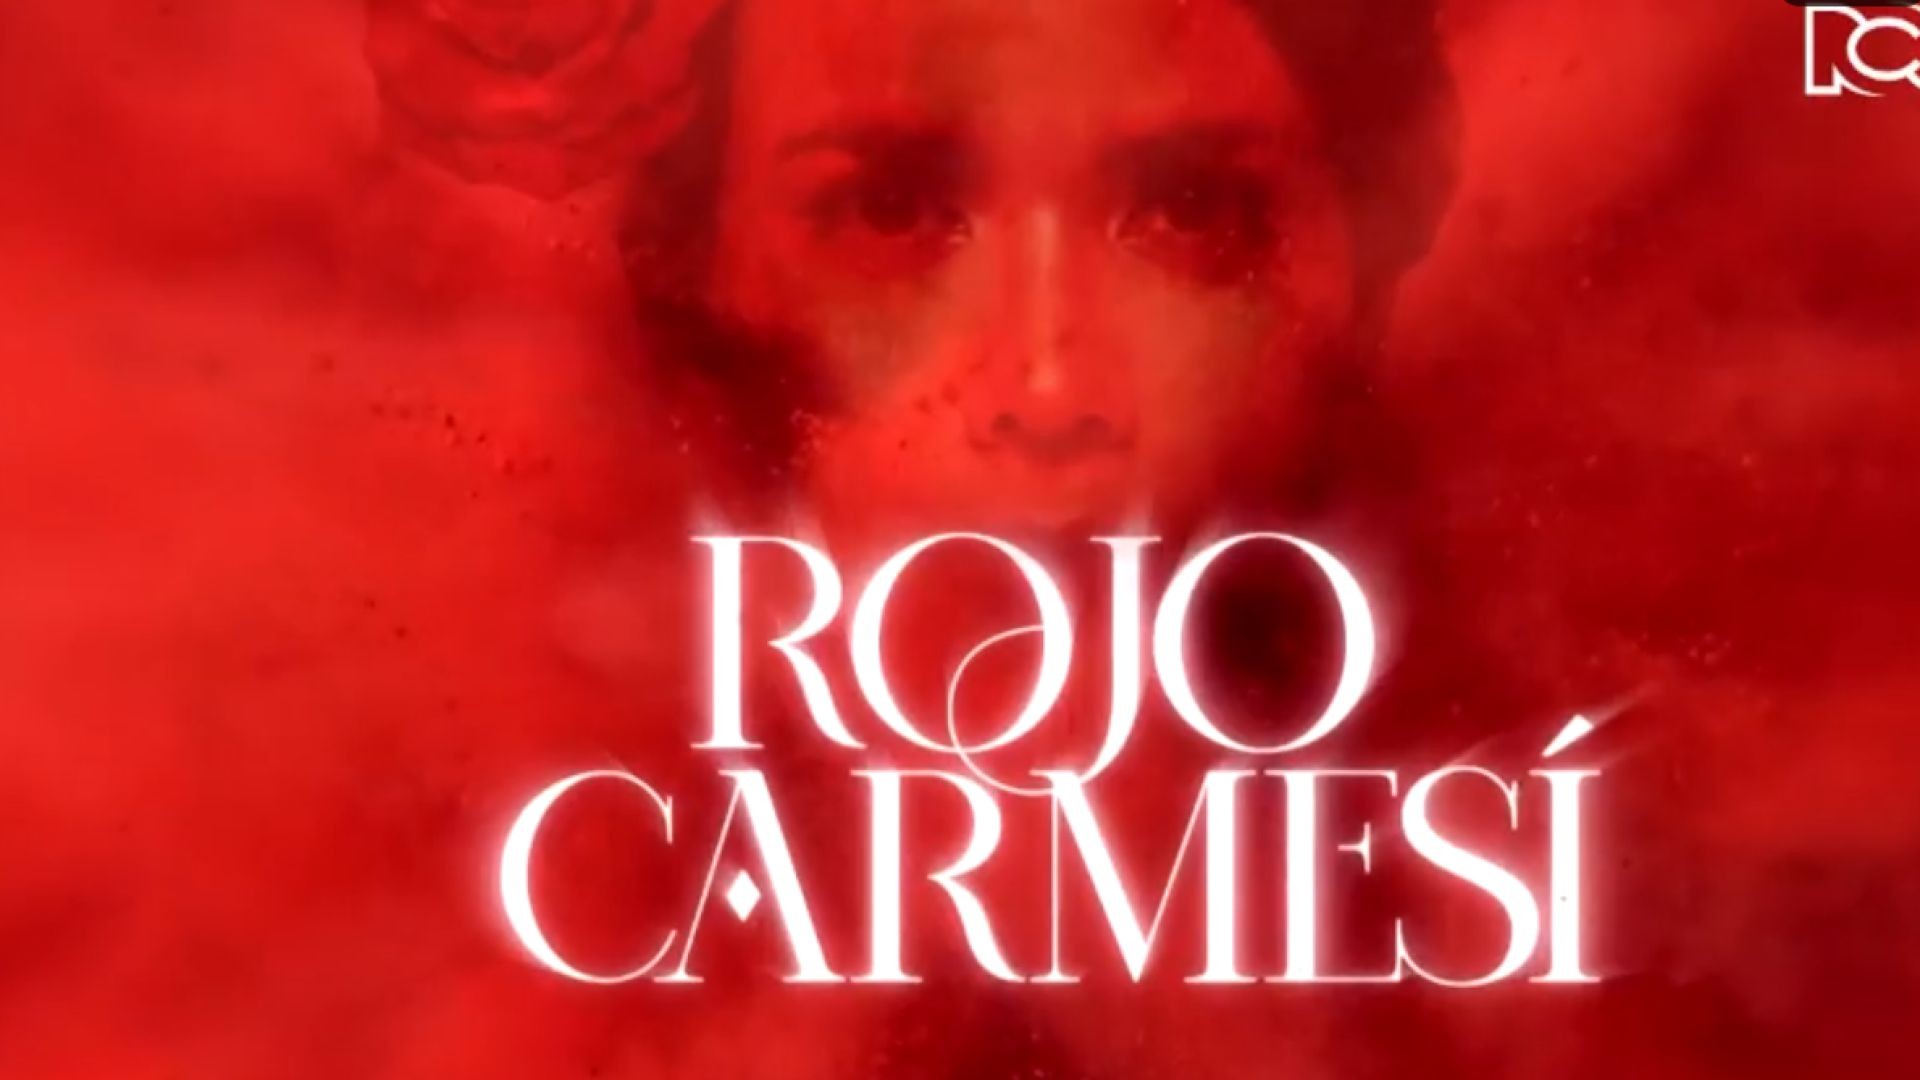 Rojo Carmesí Capitulo 7 Completo - Rojo Carmesí telenovela